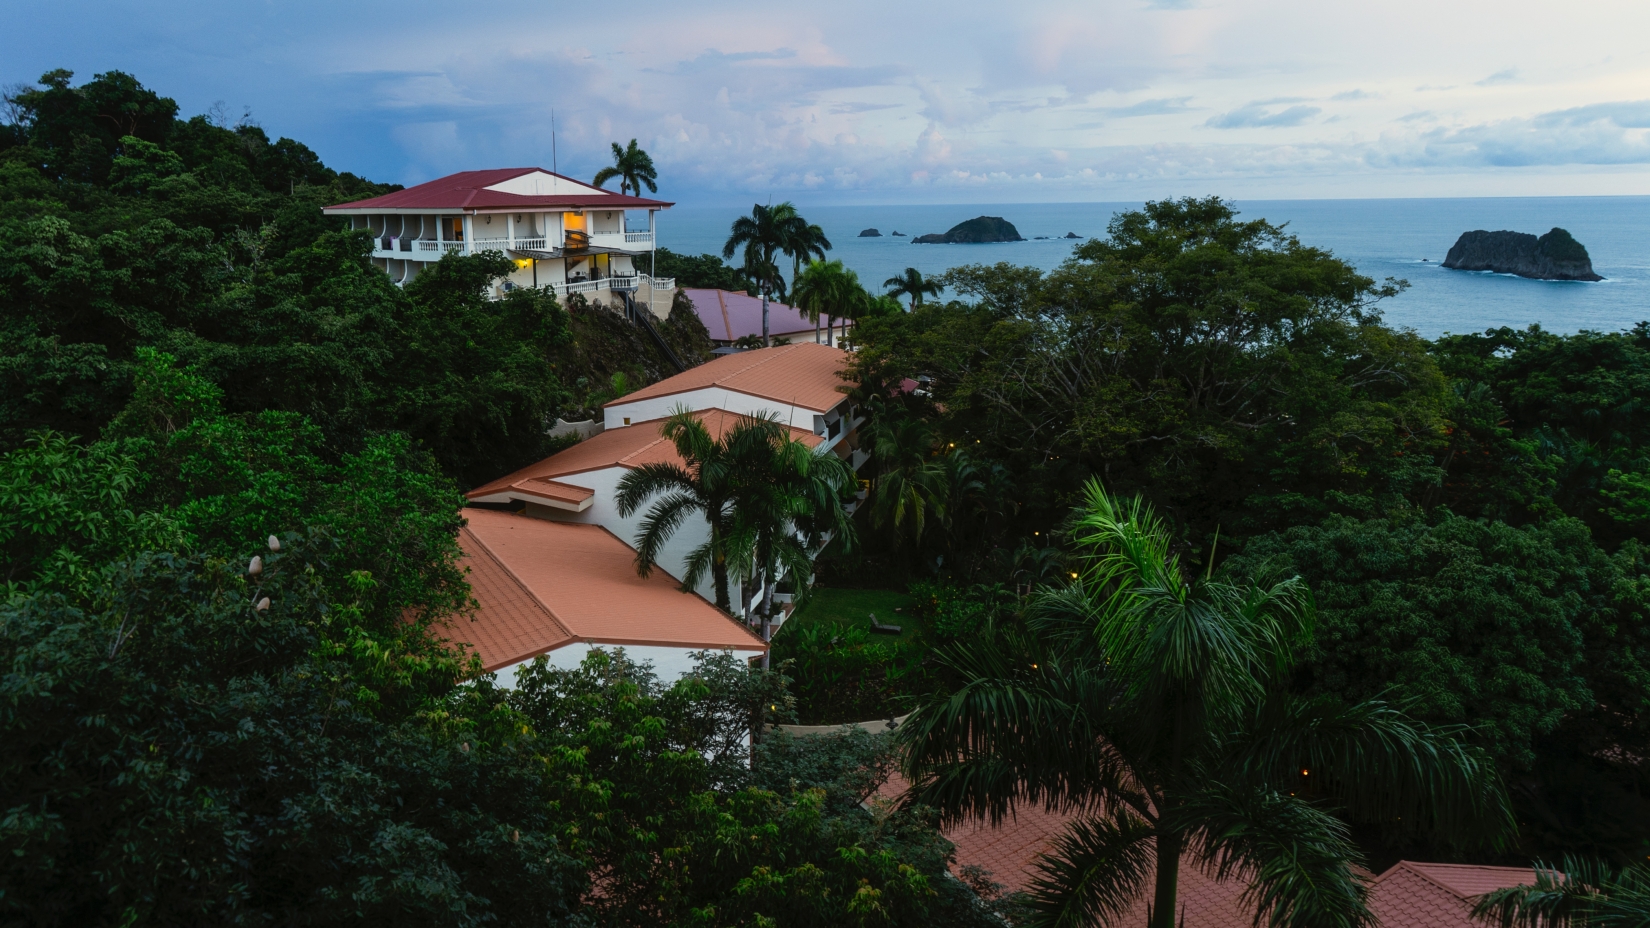 Rooftop view of El Parador Resort and surrounding treetops in Manuel Antonio, Costa Rica